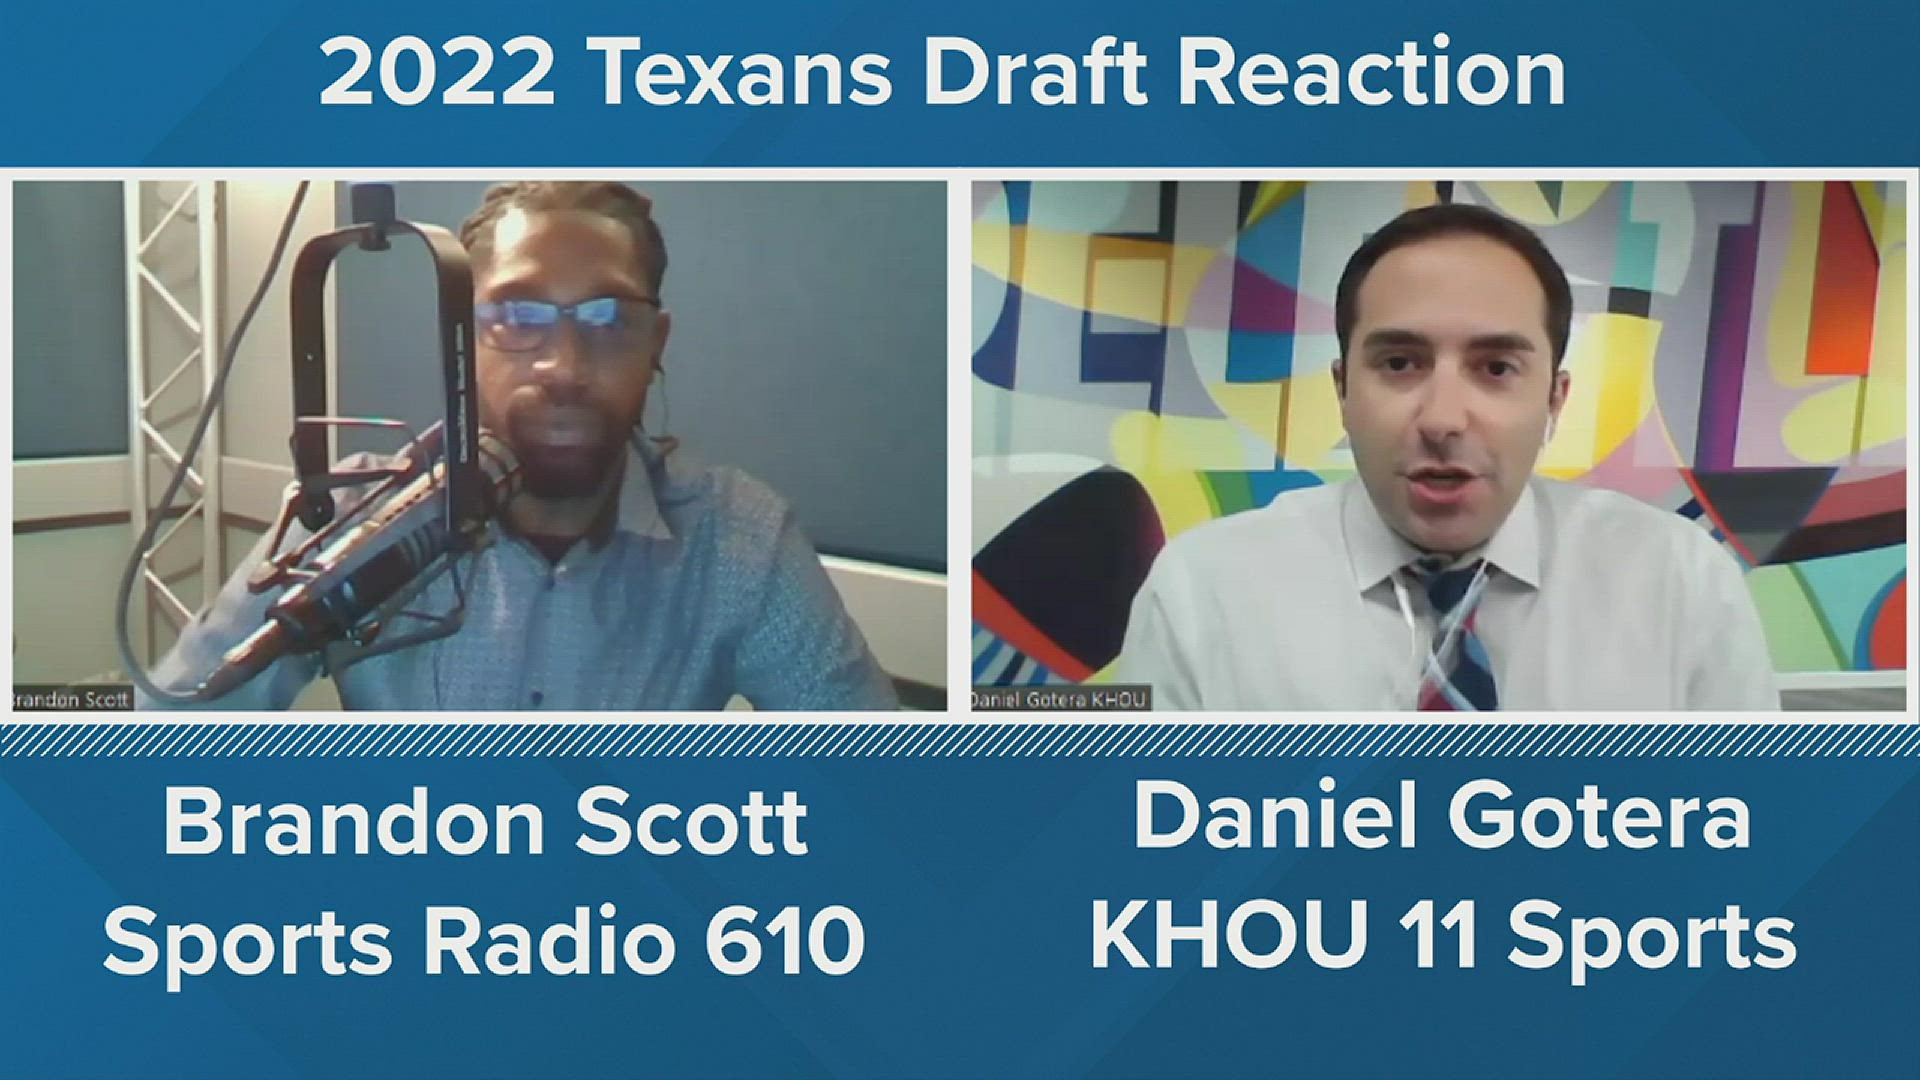 KHOU 11 sports reporter Daniel Gotera and Brandon Scott of SportsRadio 610 rate Houston's picks.